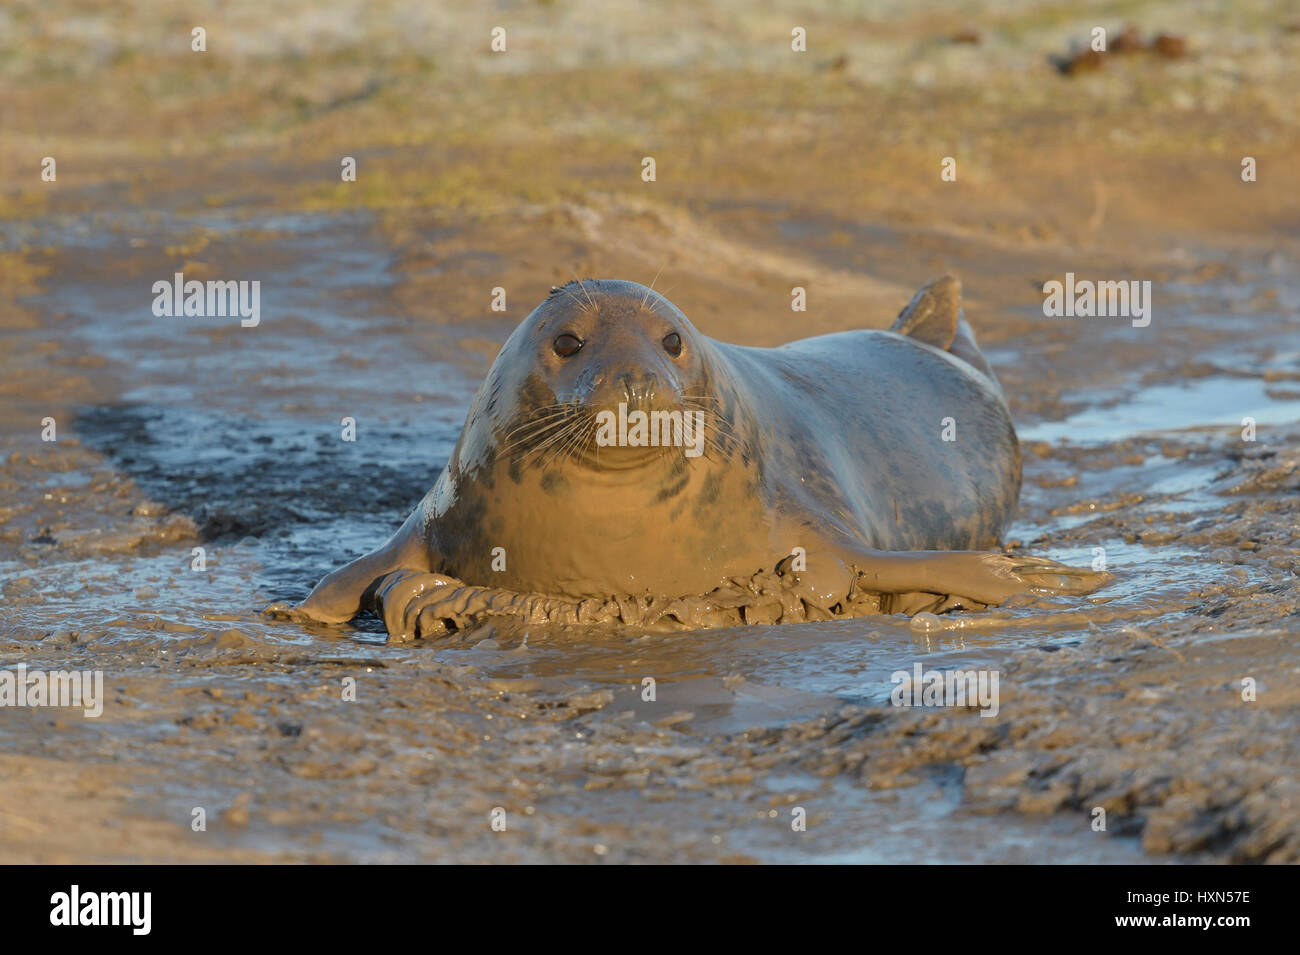 Atlantic de phoques gris (Halichoerus grypus) femelle adulte se vautrer dans la boue. Donna Nook, Lincolnshire. UK. Janvier. Banque D'Images